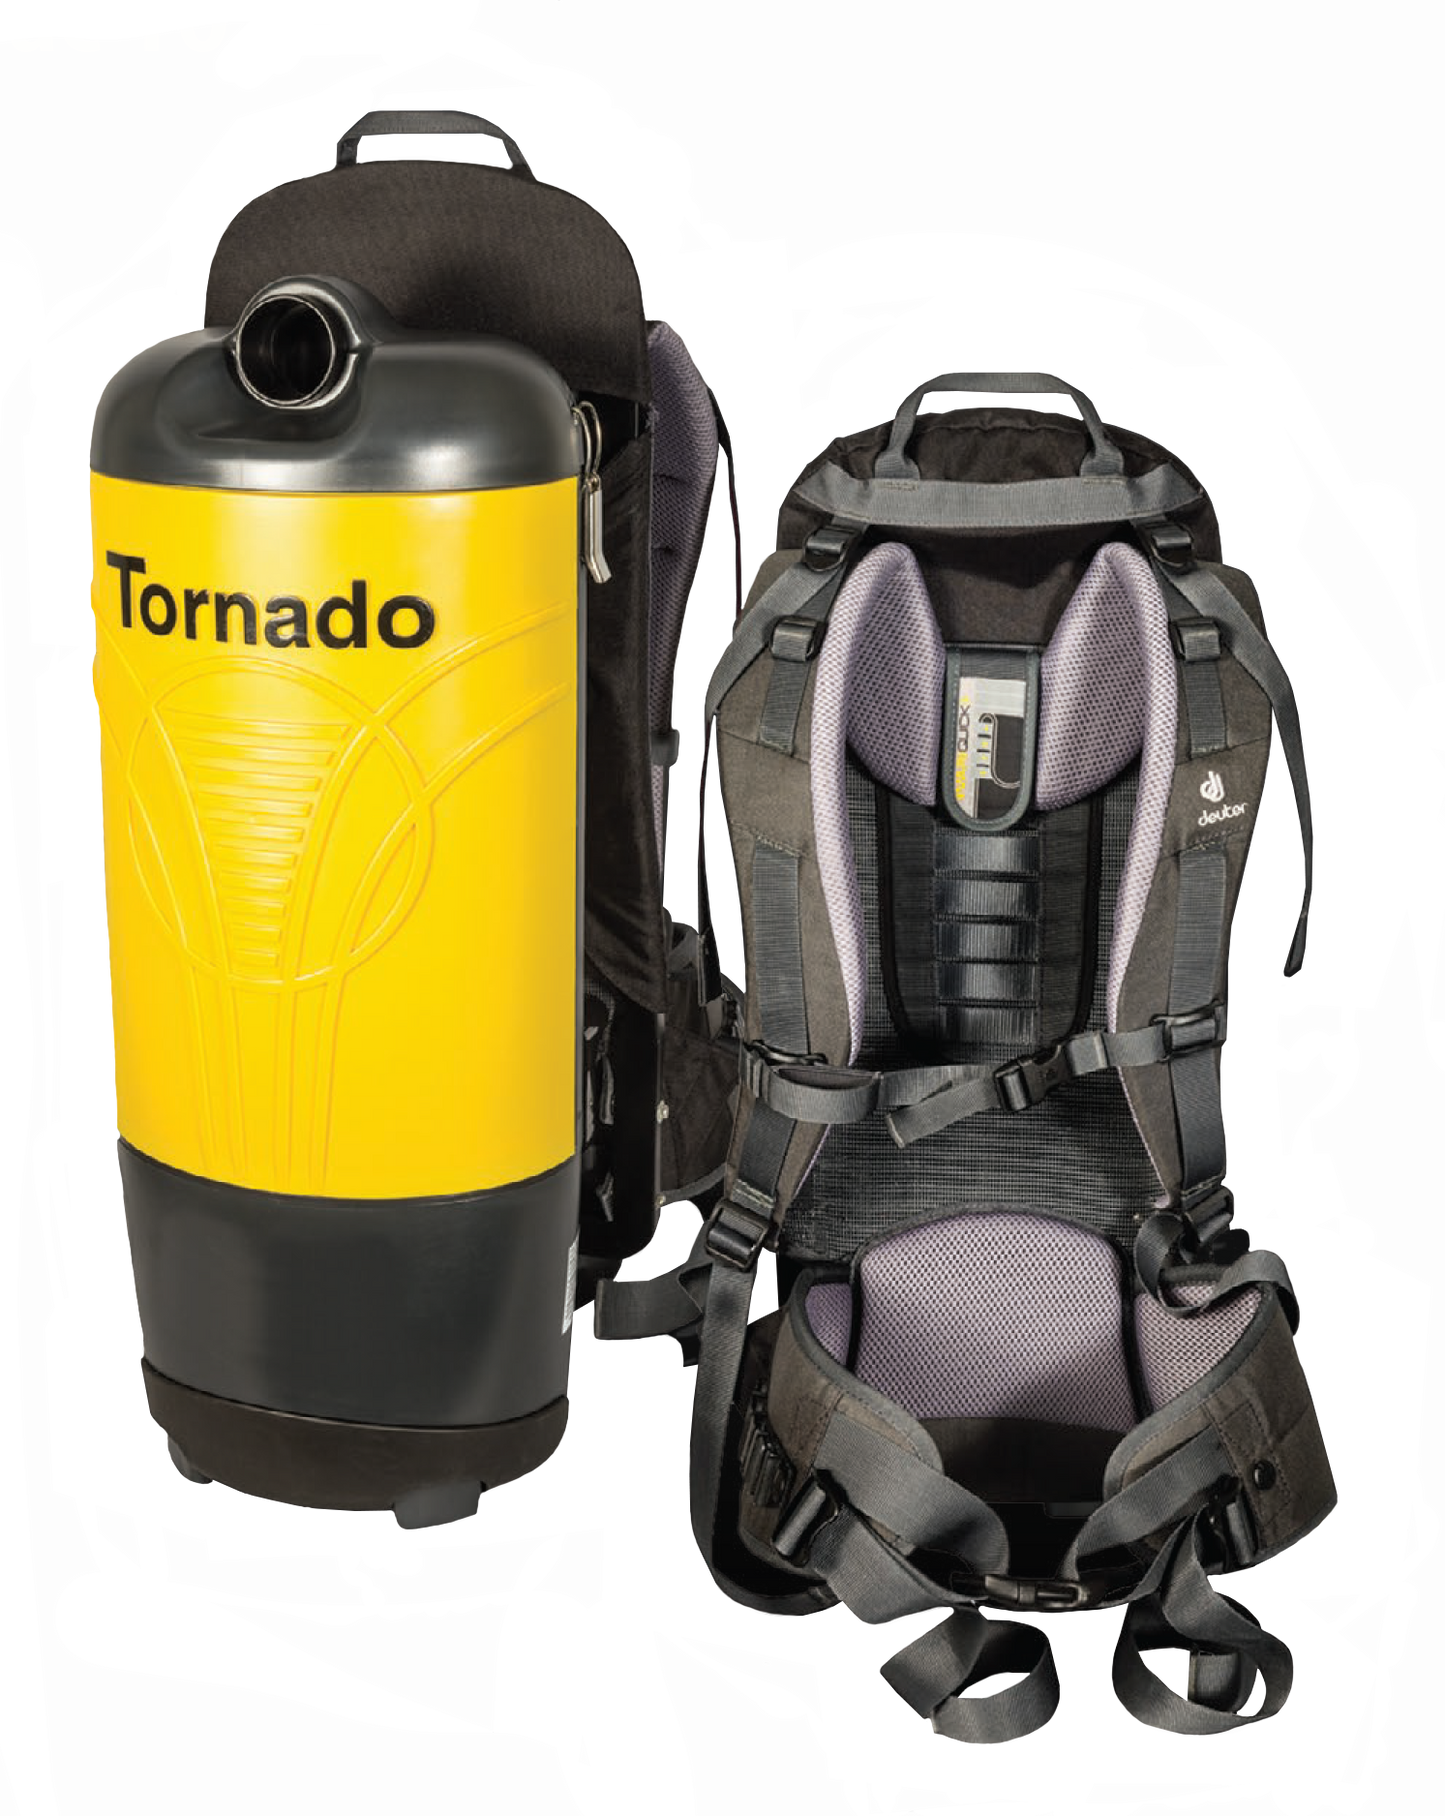 Tornado Backpack Vacuum 6 Qt